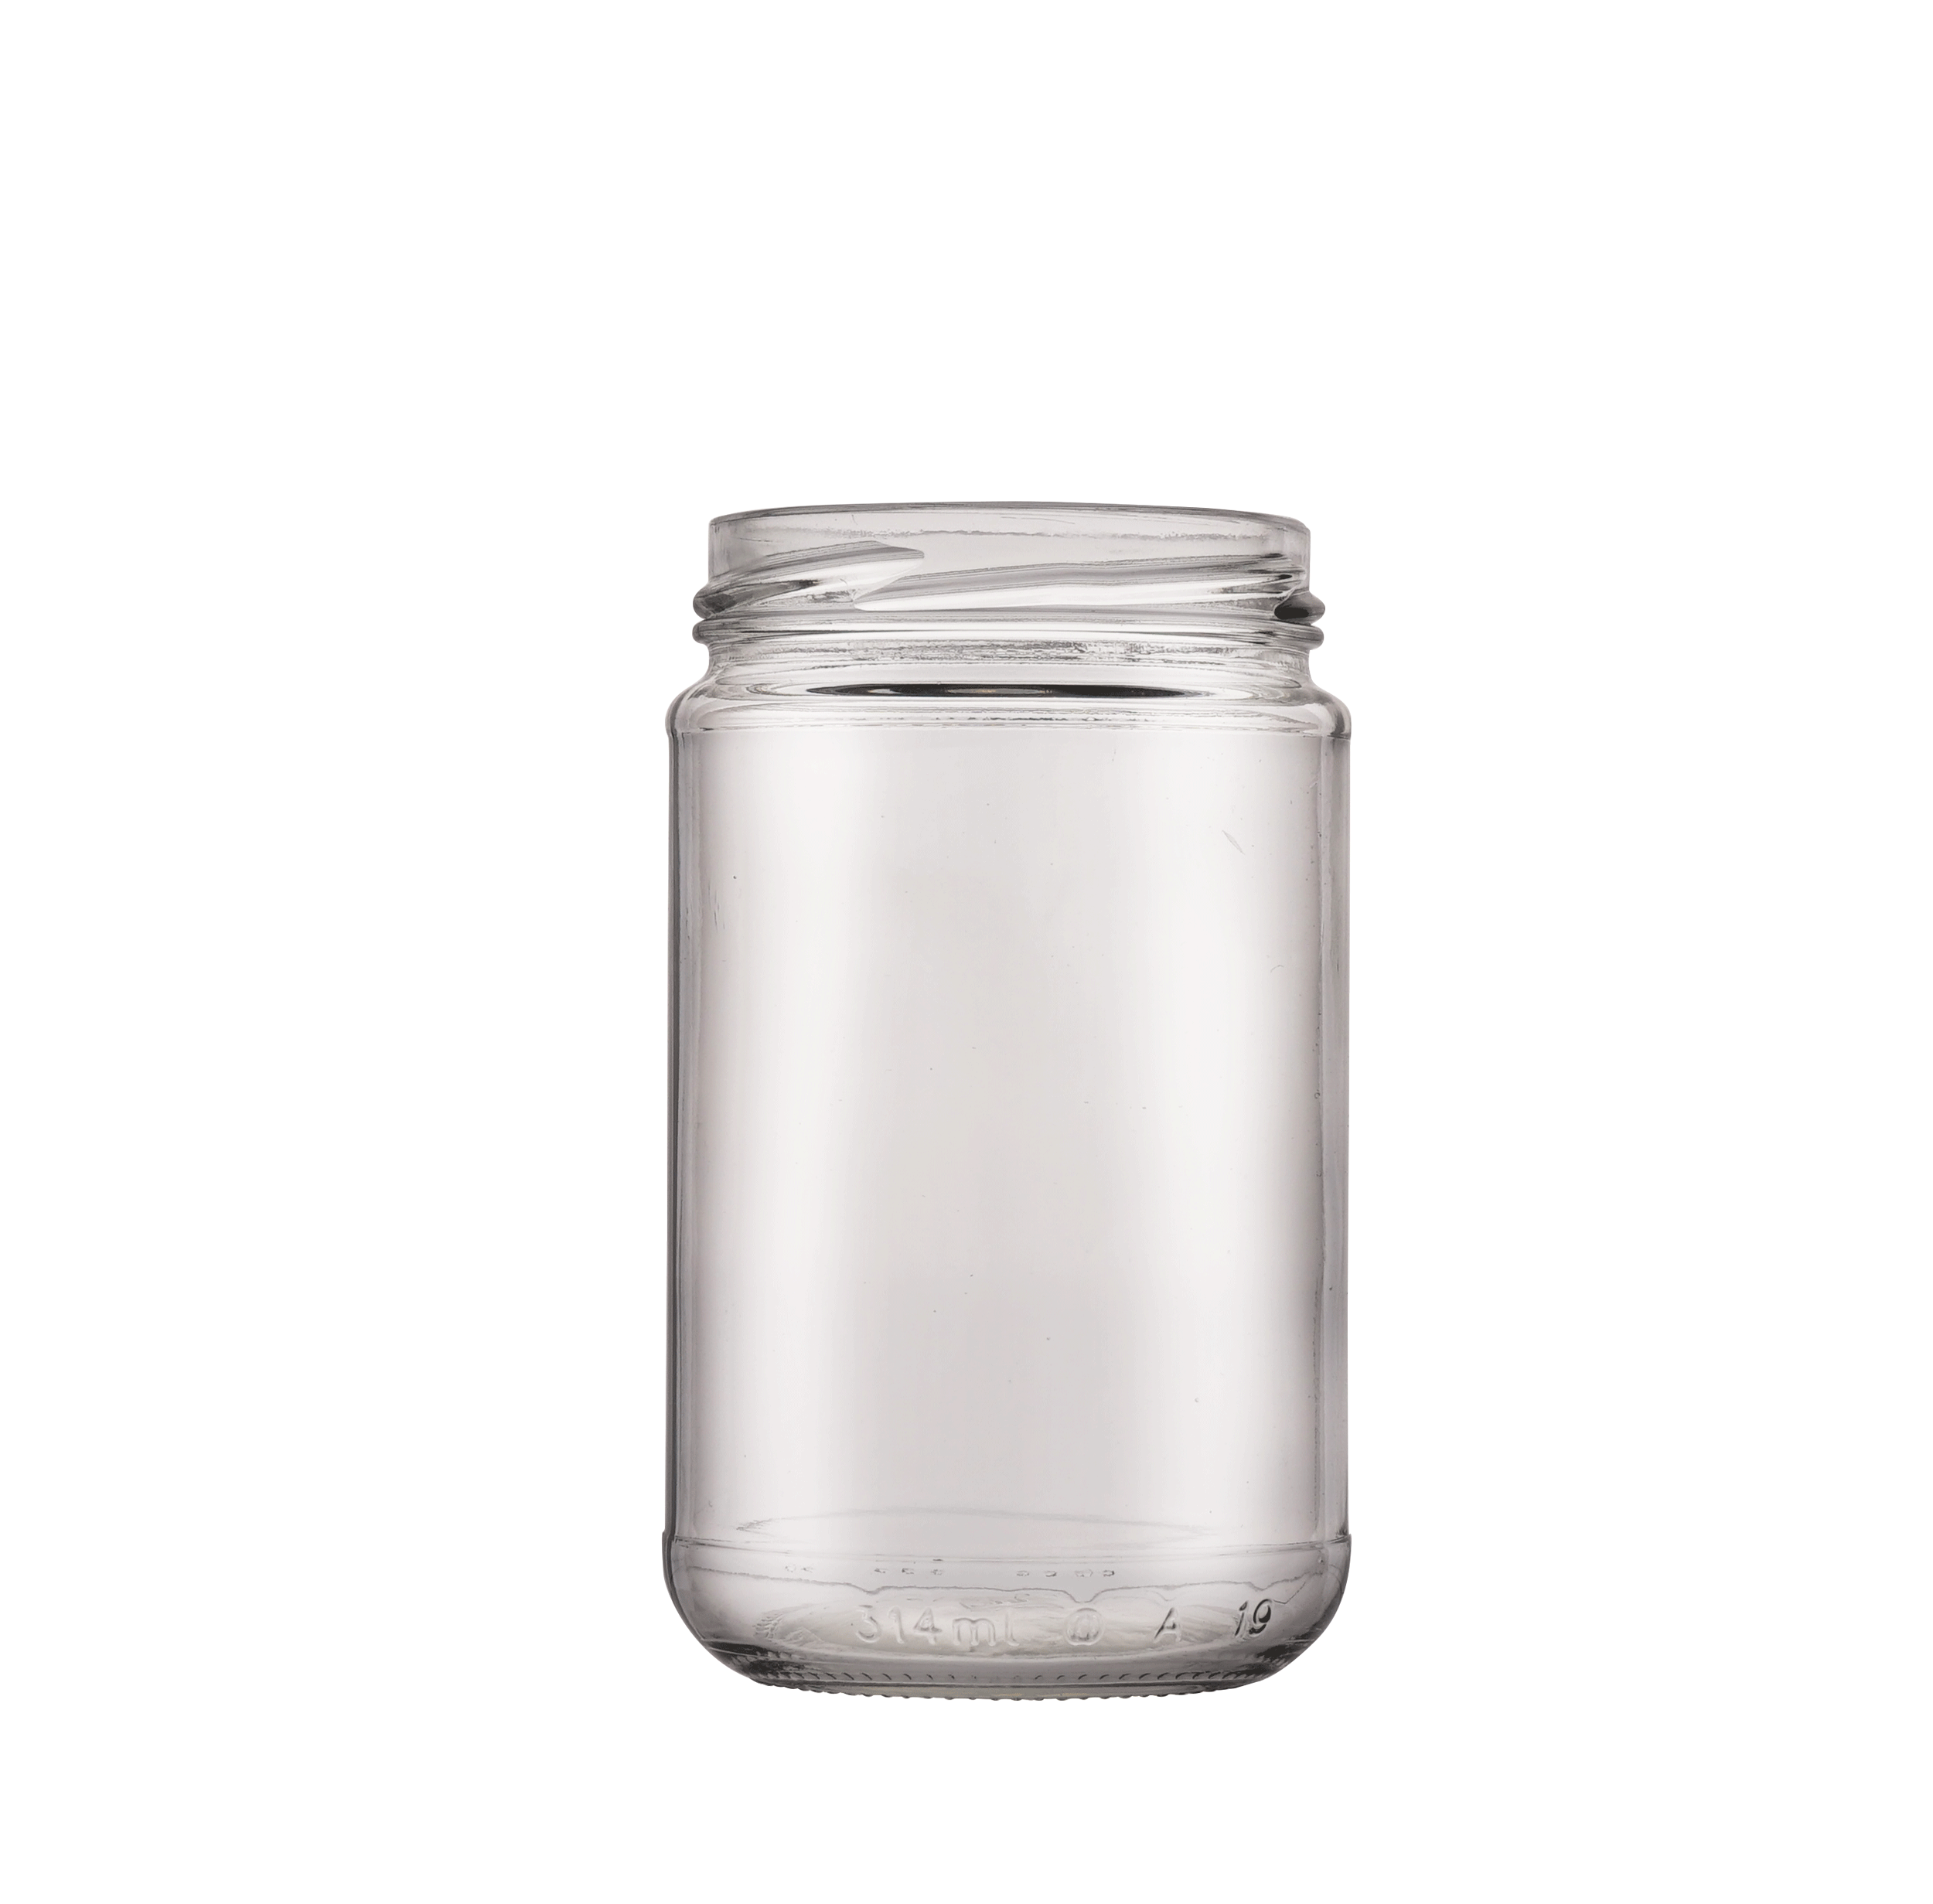 TO-314 glass jar fi 63